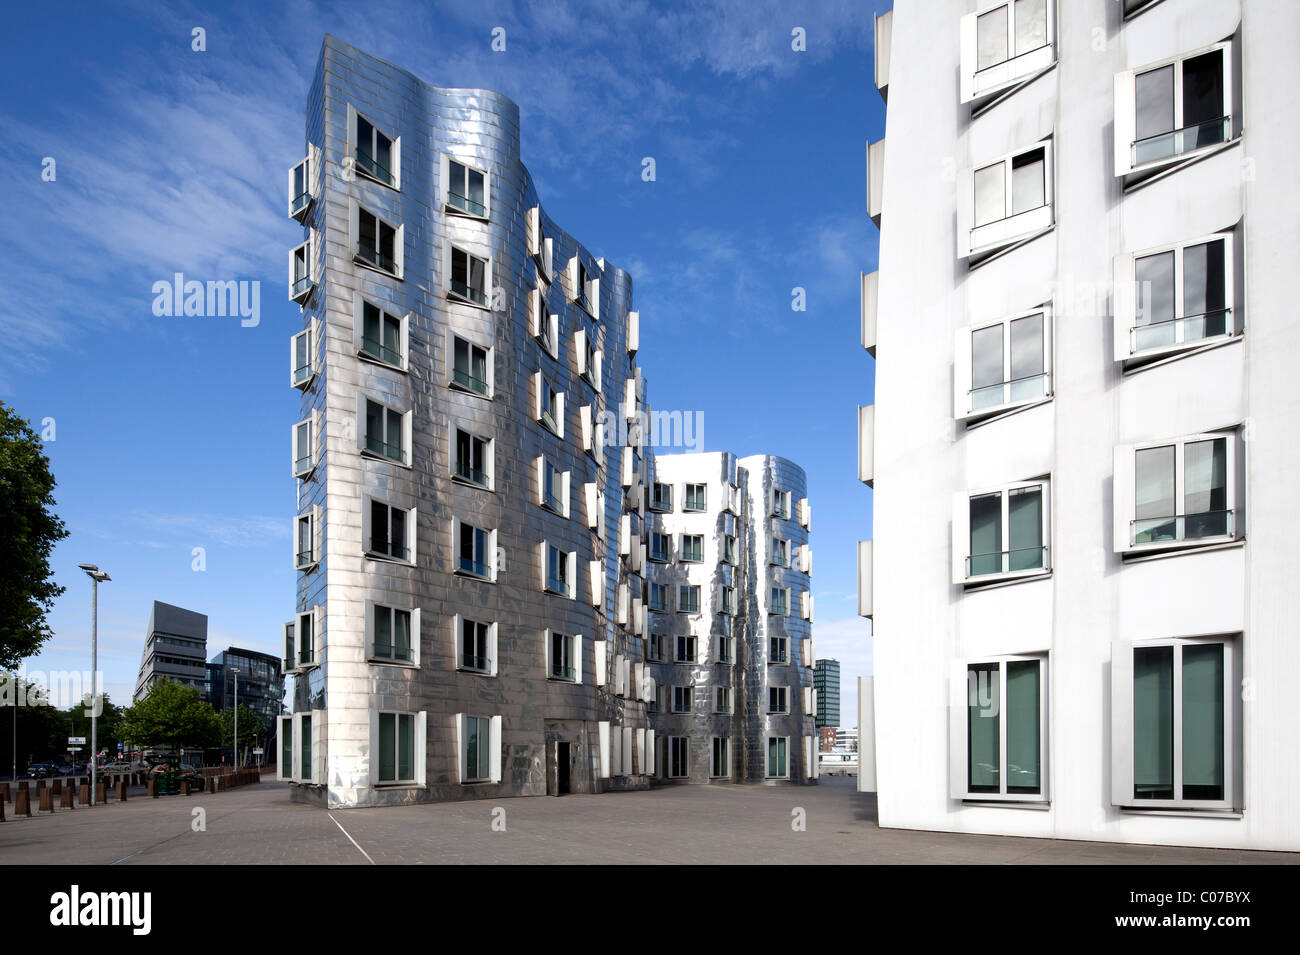 Neuer Zollhof Gebäude in den Medienhafen Medienhafen Gehry, Gehrybauten, Düsseldorf, Nordrhein-Westfalen Stockfoto